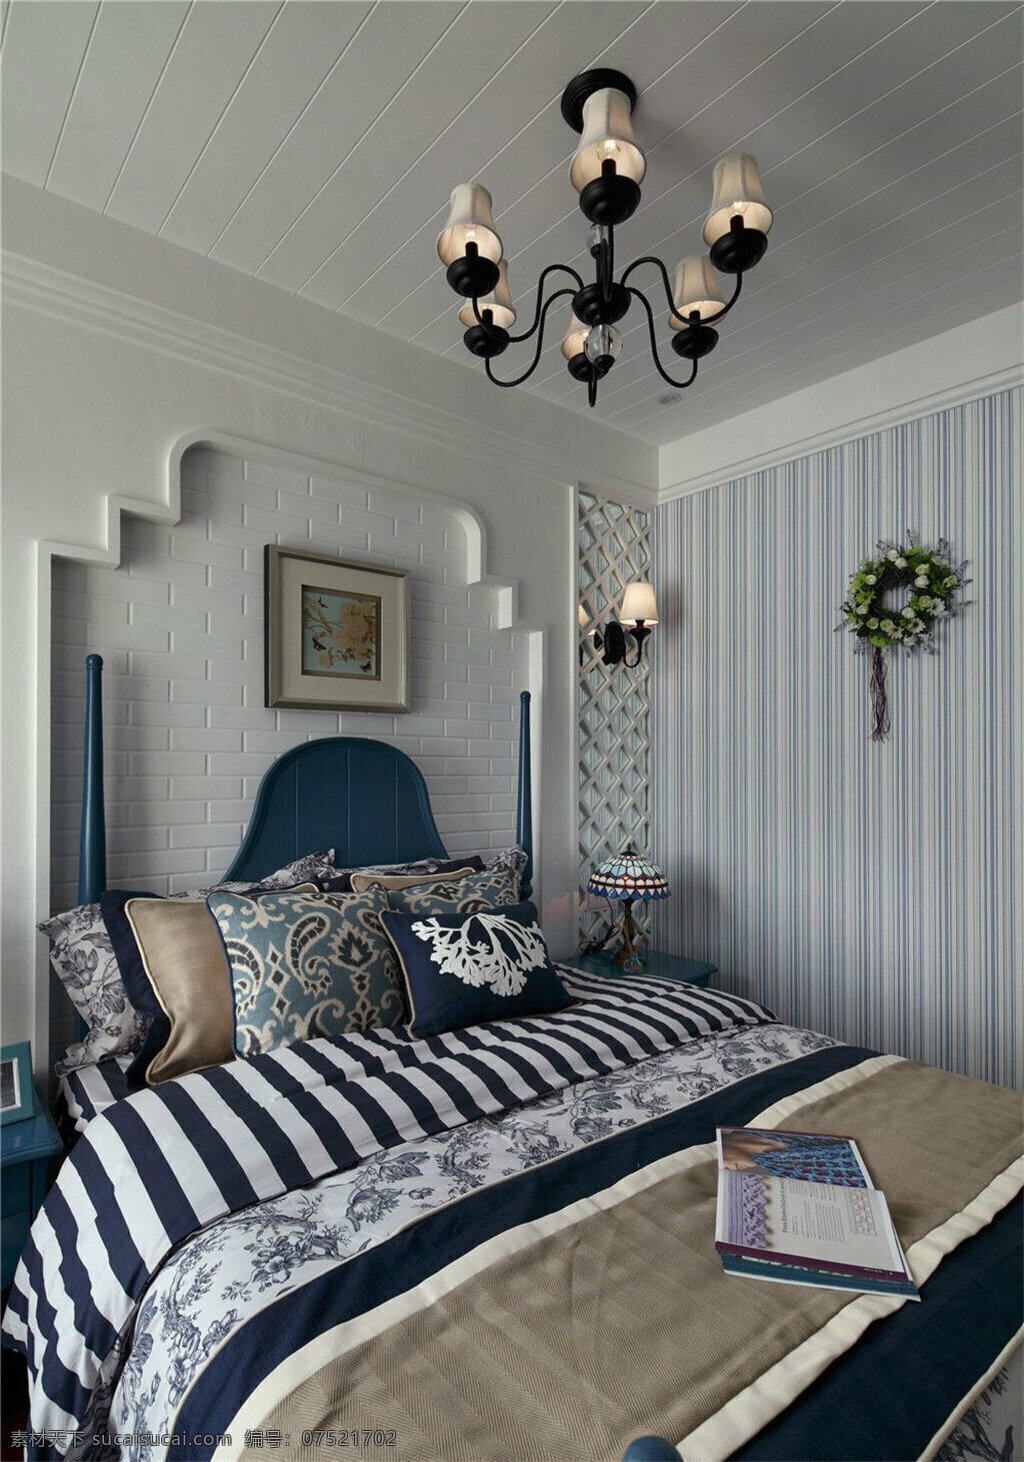 地中 海风 室内设计 卧室 衣柜 效果图 现代 简约 床 吊灯 照片背景墙 风 家装